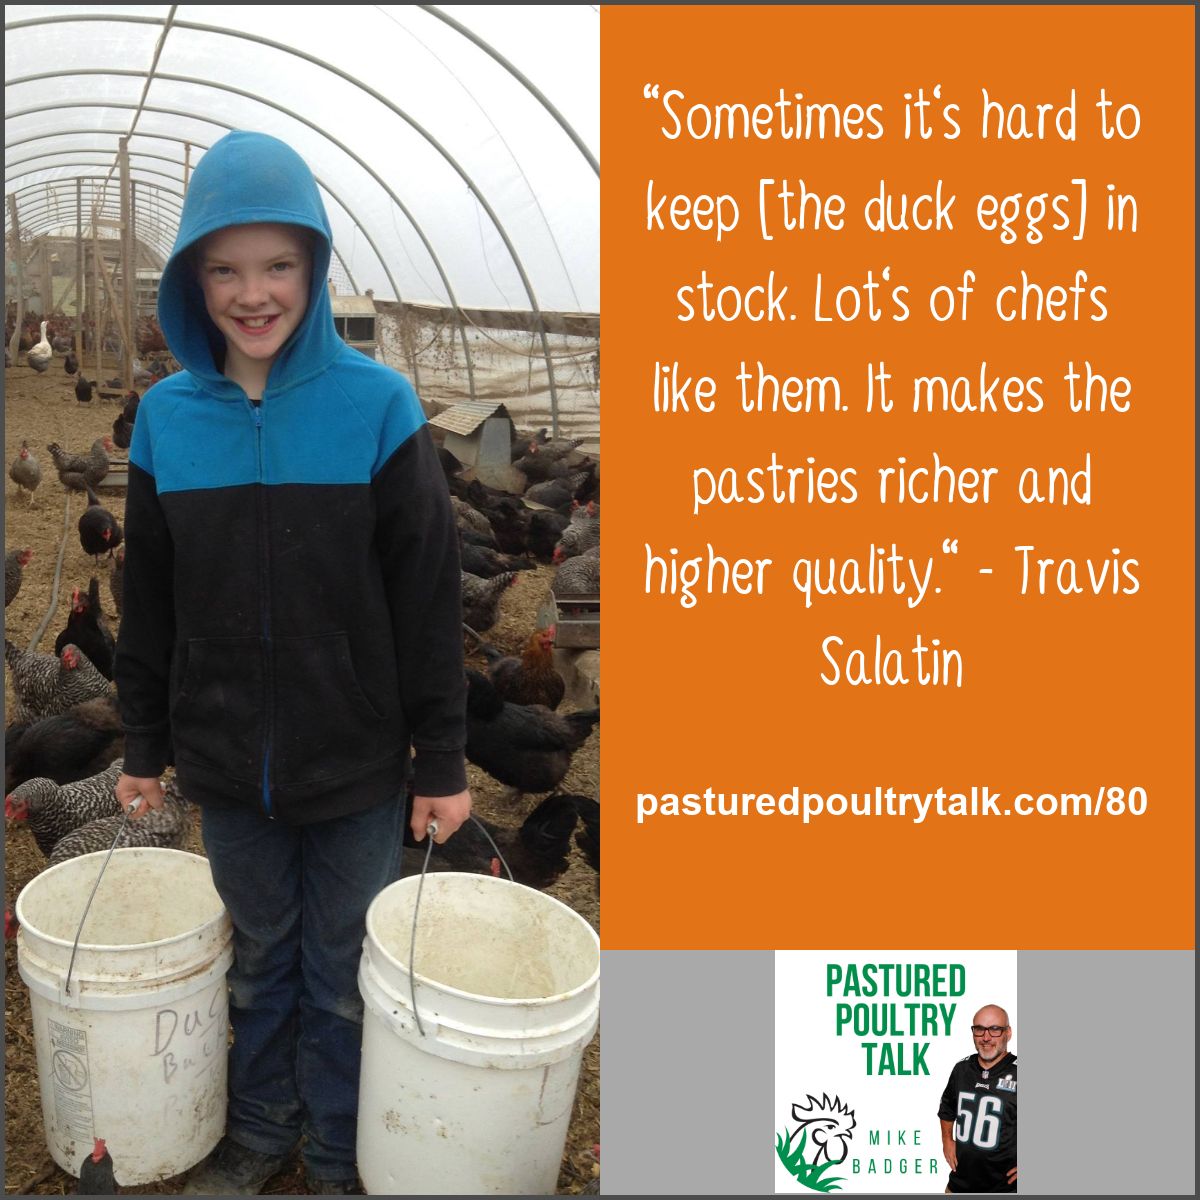 Travis Salatin on Pastured Poultry Talk